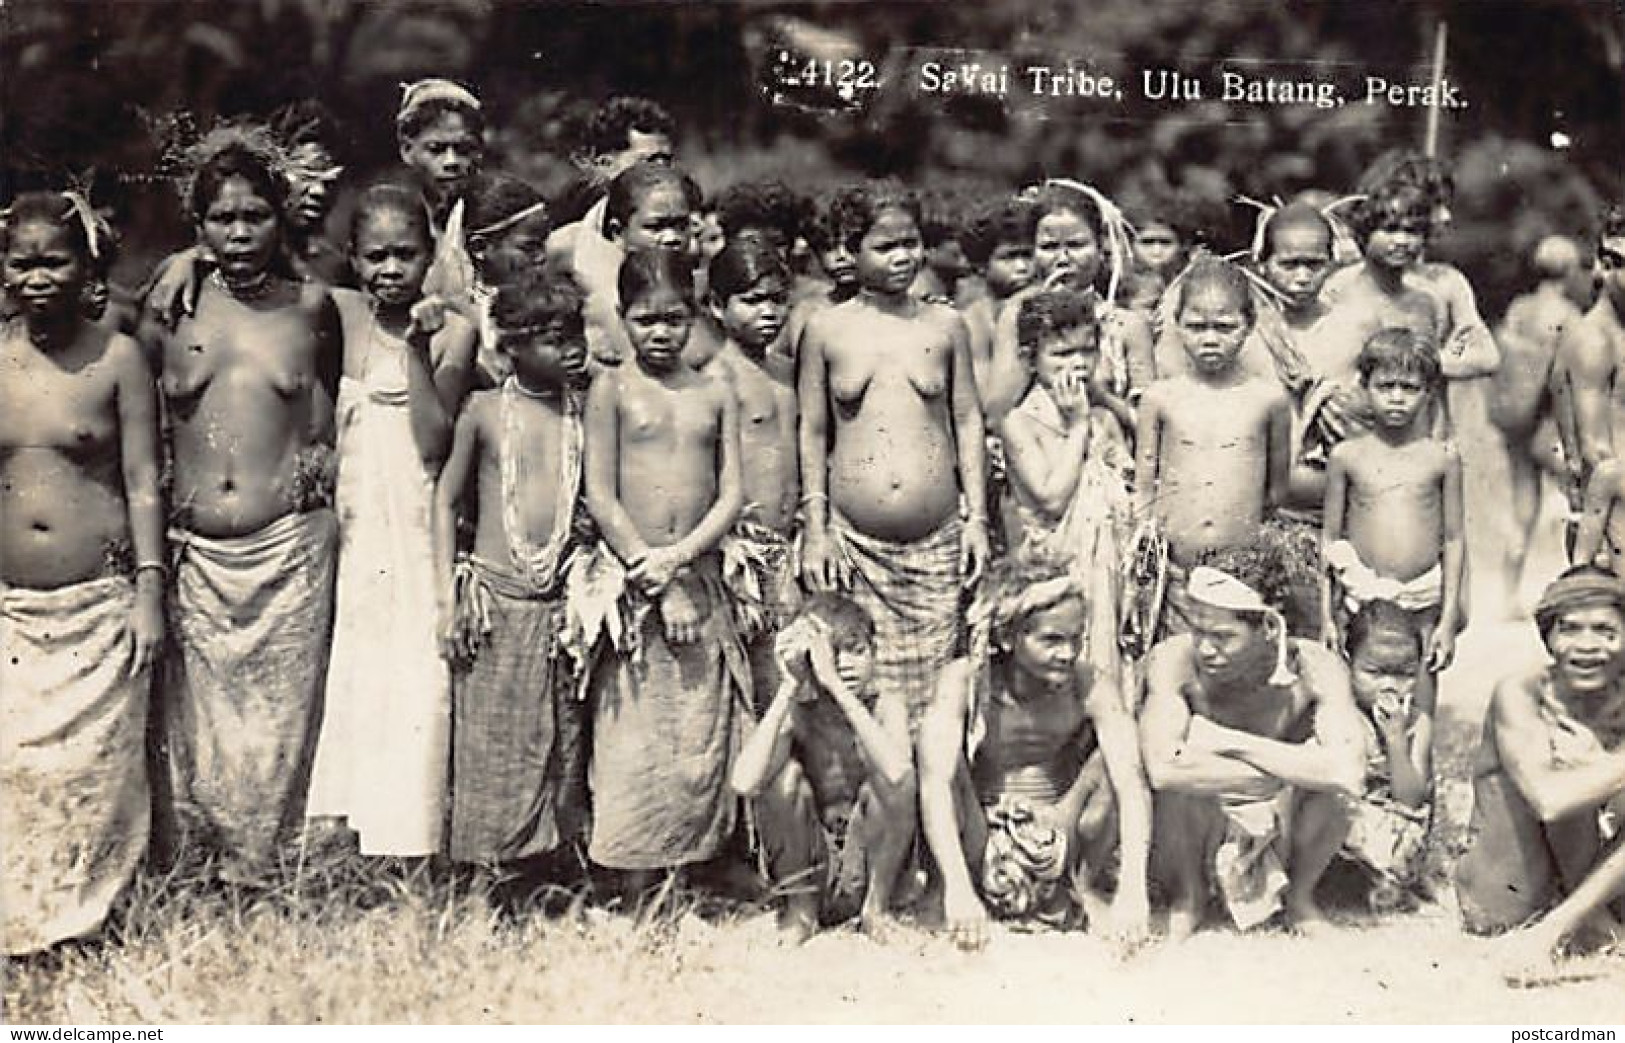 Malaysia - ULU BATANG Perak - ETHNIC NUDE - Sakai Tribe - REAL PHOTO - Publ. Unknown  - Malesia